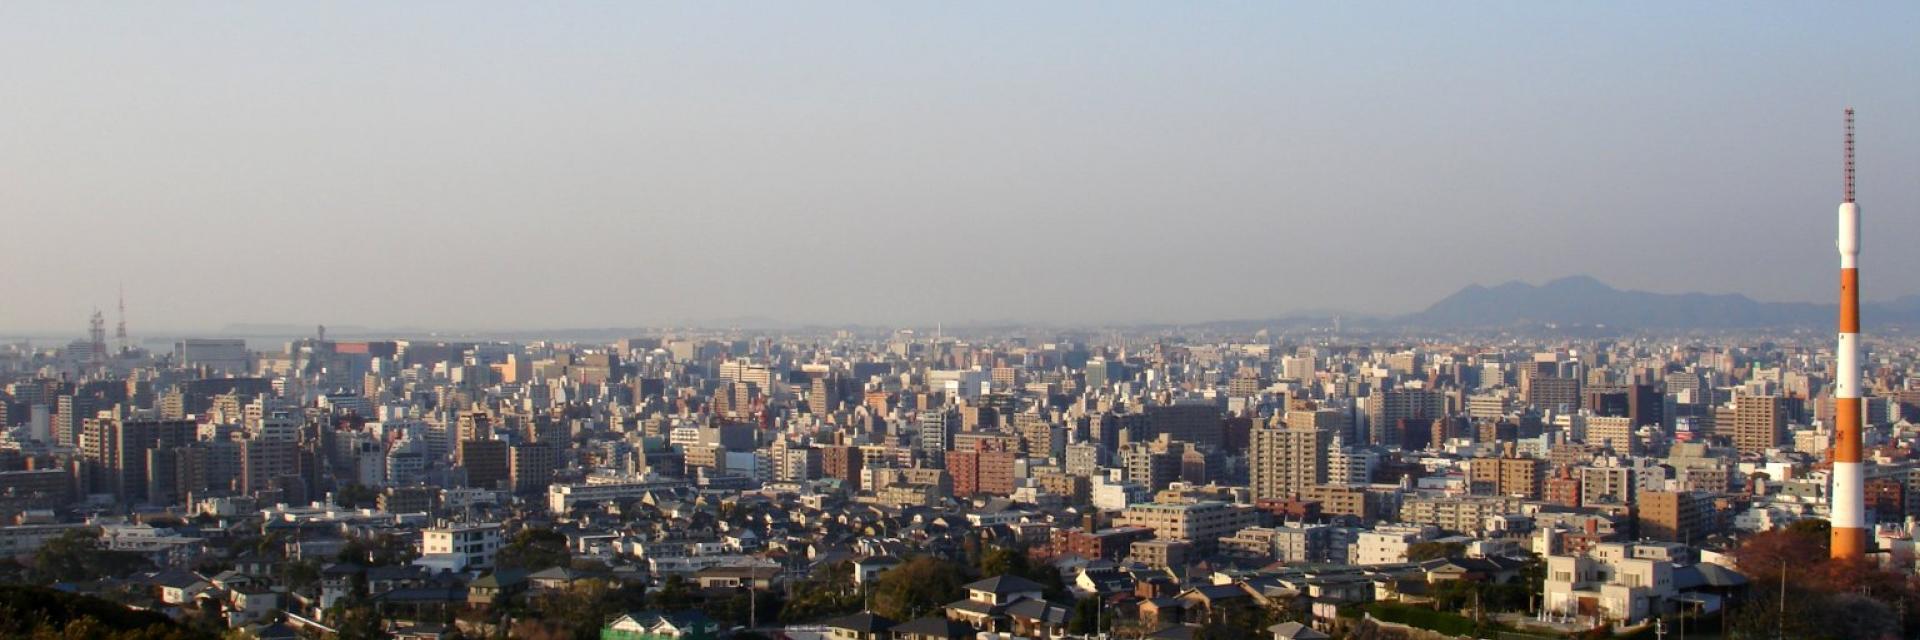 由福岡市南區的鴻巢山俯望的福岡市街 CC BY-SA 3.0